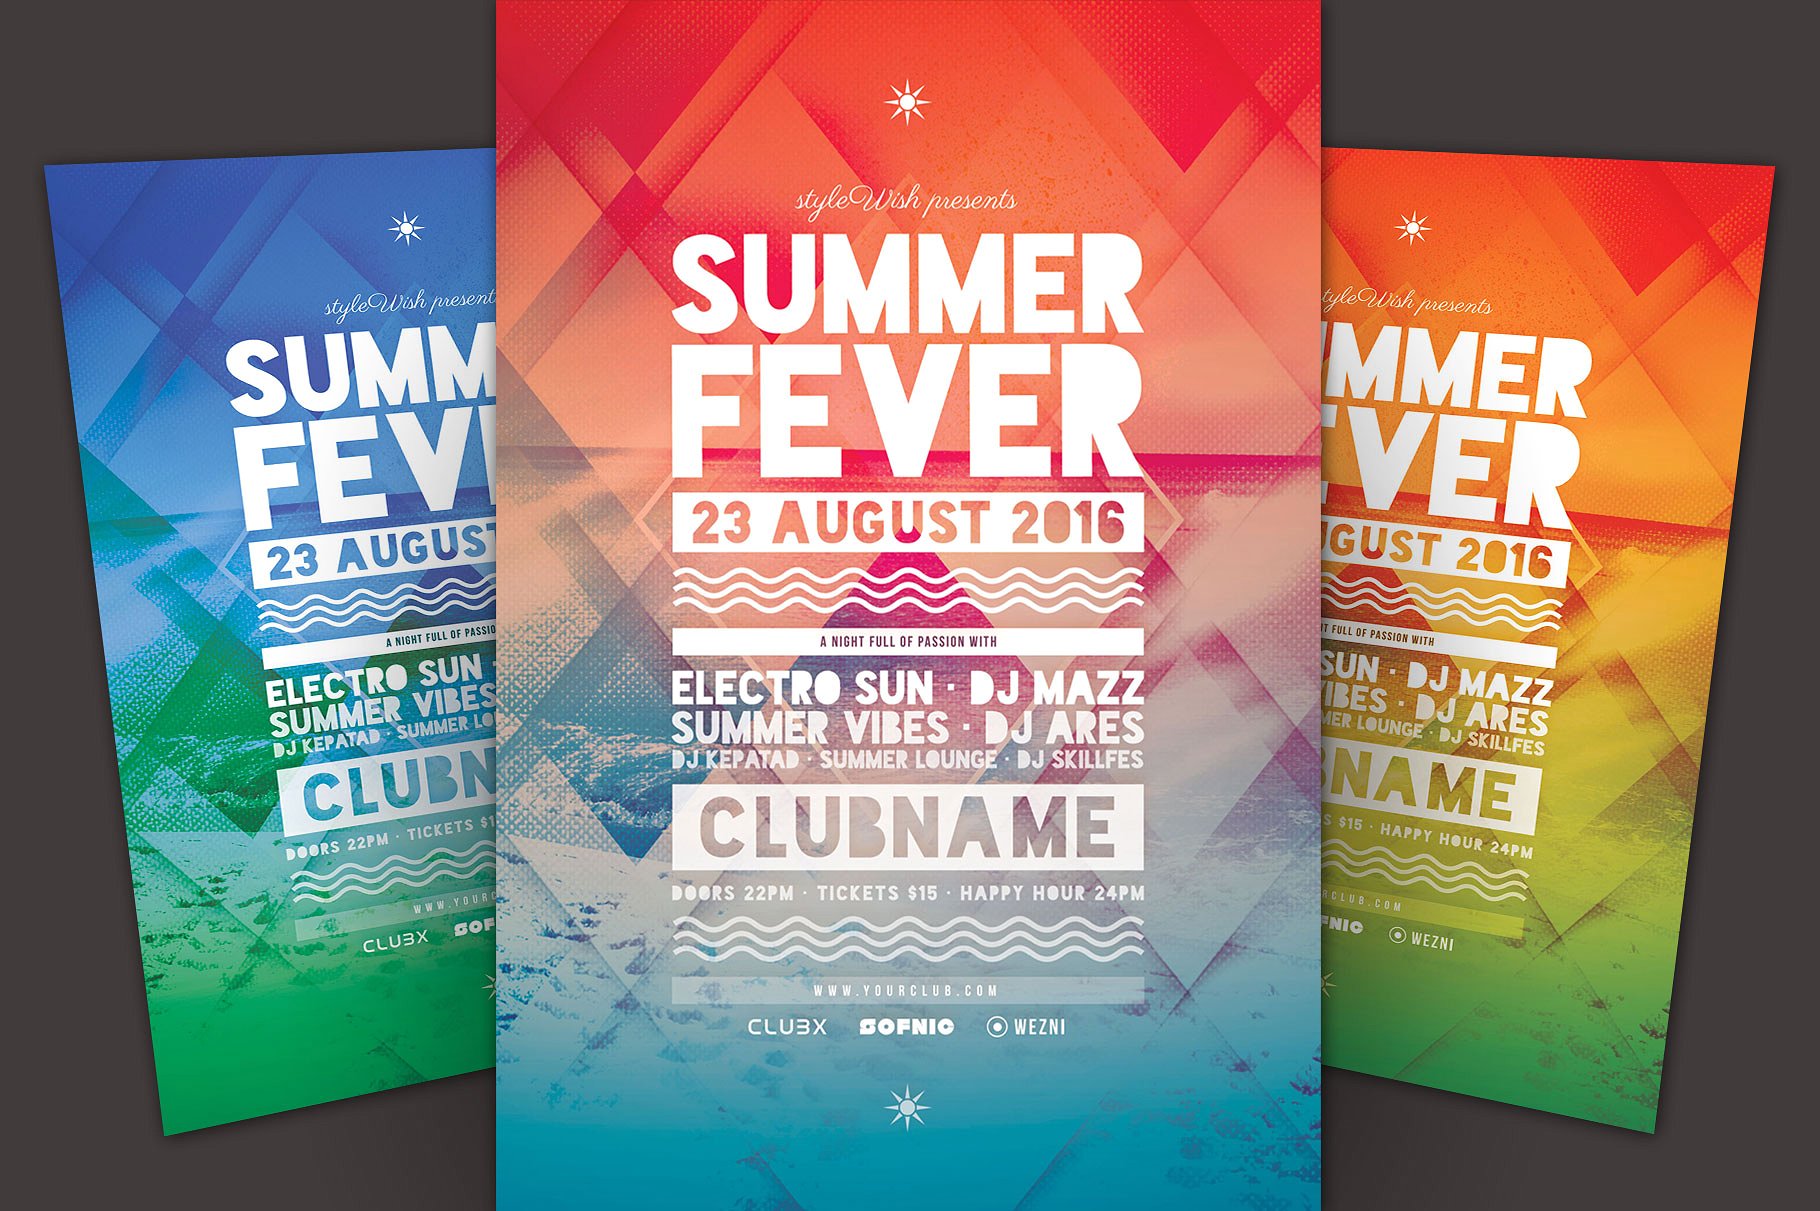 缤纷夏日海滩主题活动传单模板 Summer Fever Flyer Template插图